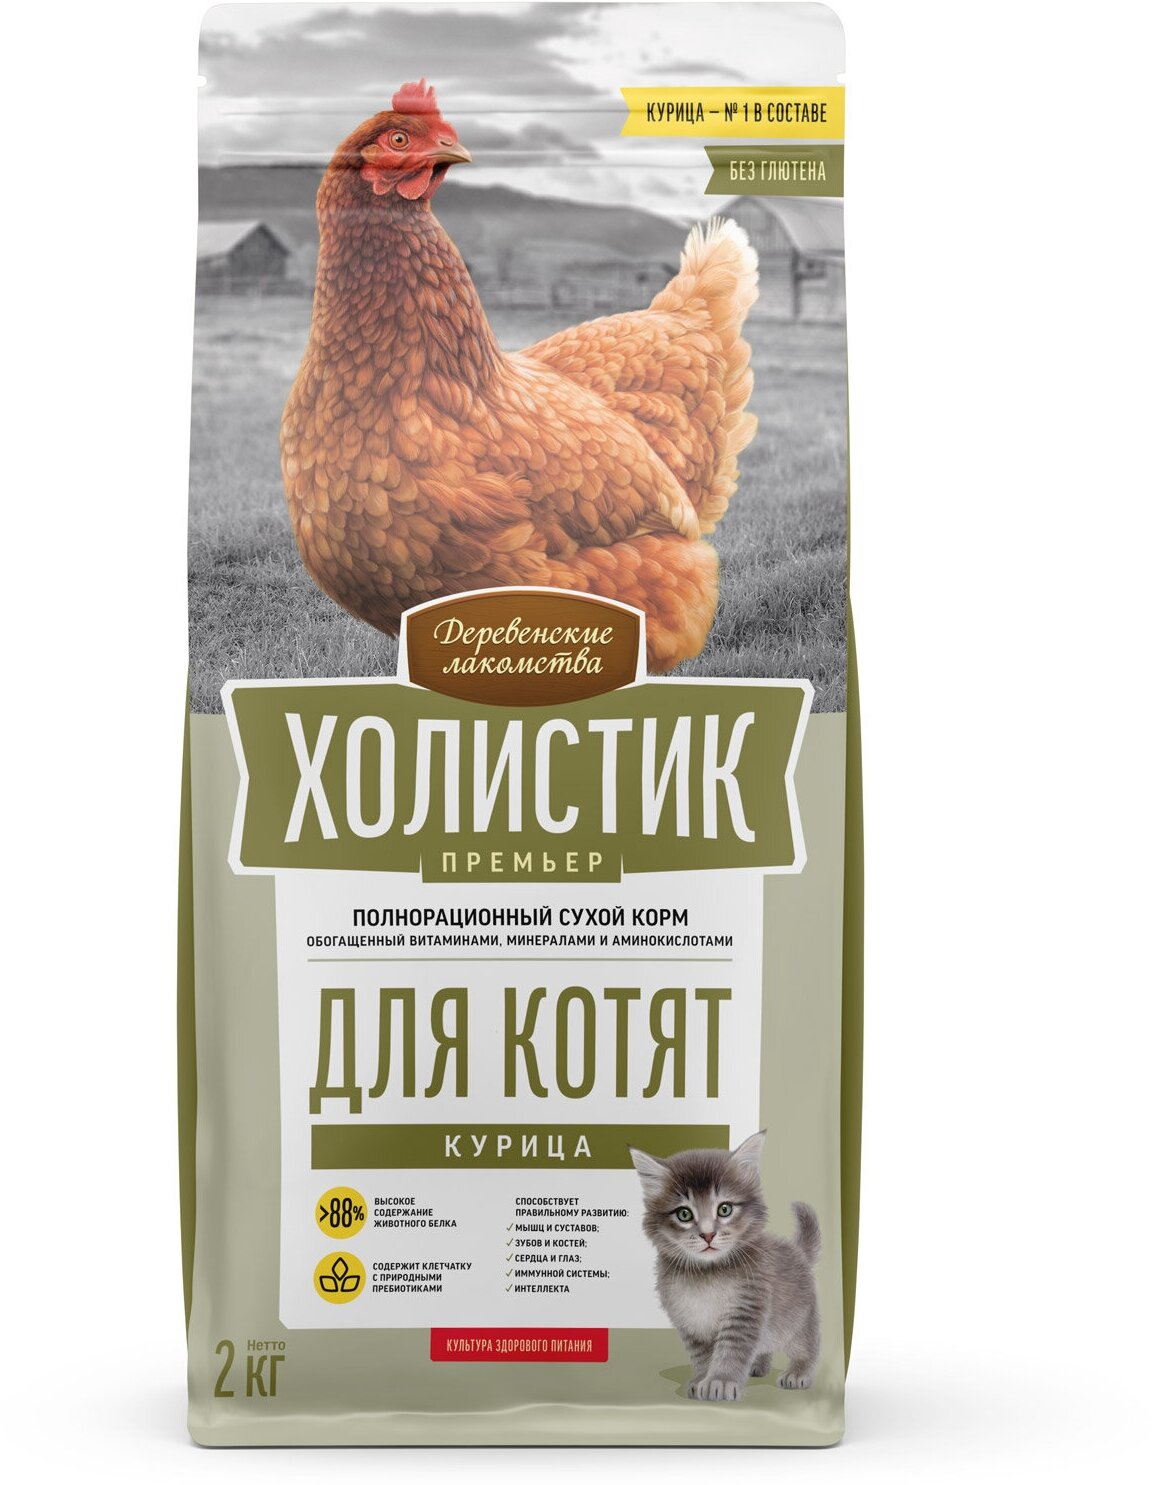 Деревенские лакомства Холистик Премьер корм для котят курица 2 кг